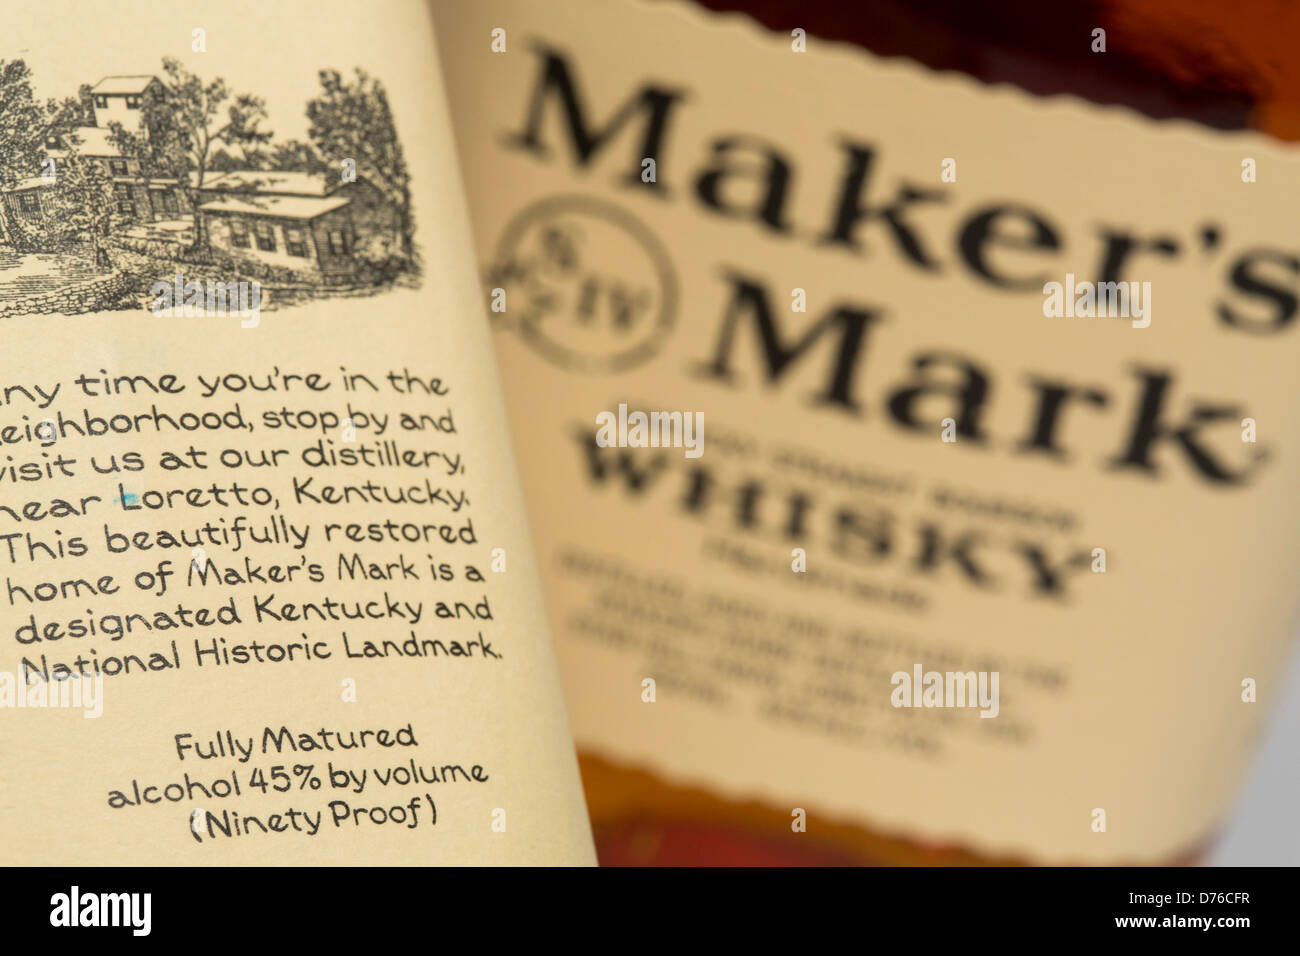 Maker's Mark Whiskey con su original de 45% de alcohol por volumen (90) prueba de contenido. Foto de stock